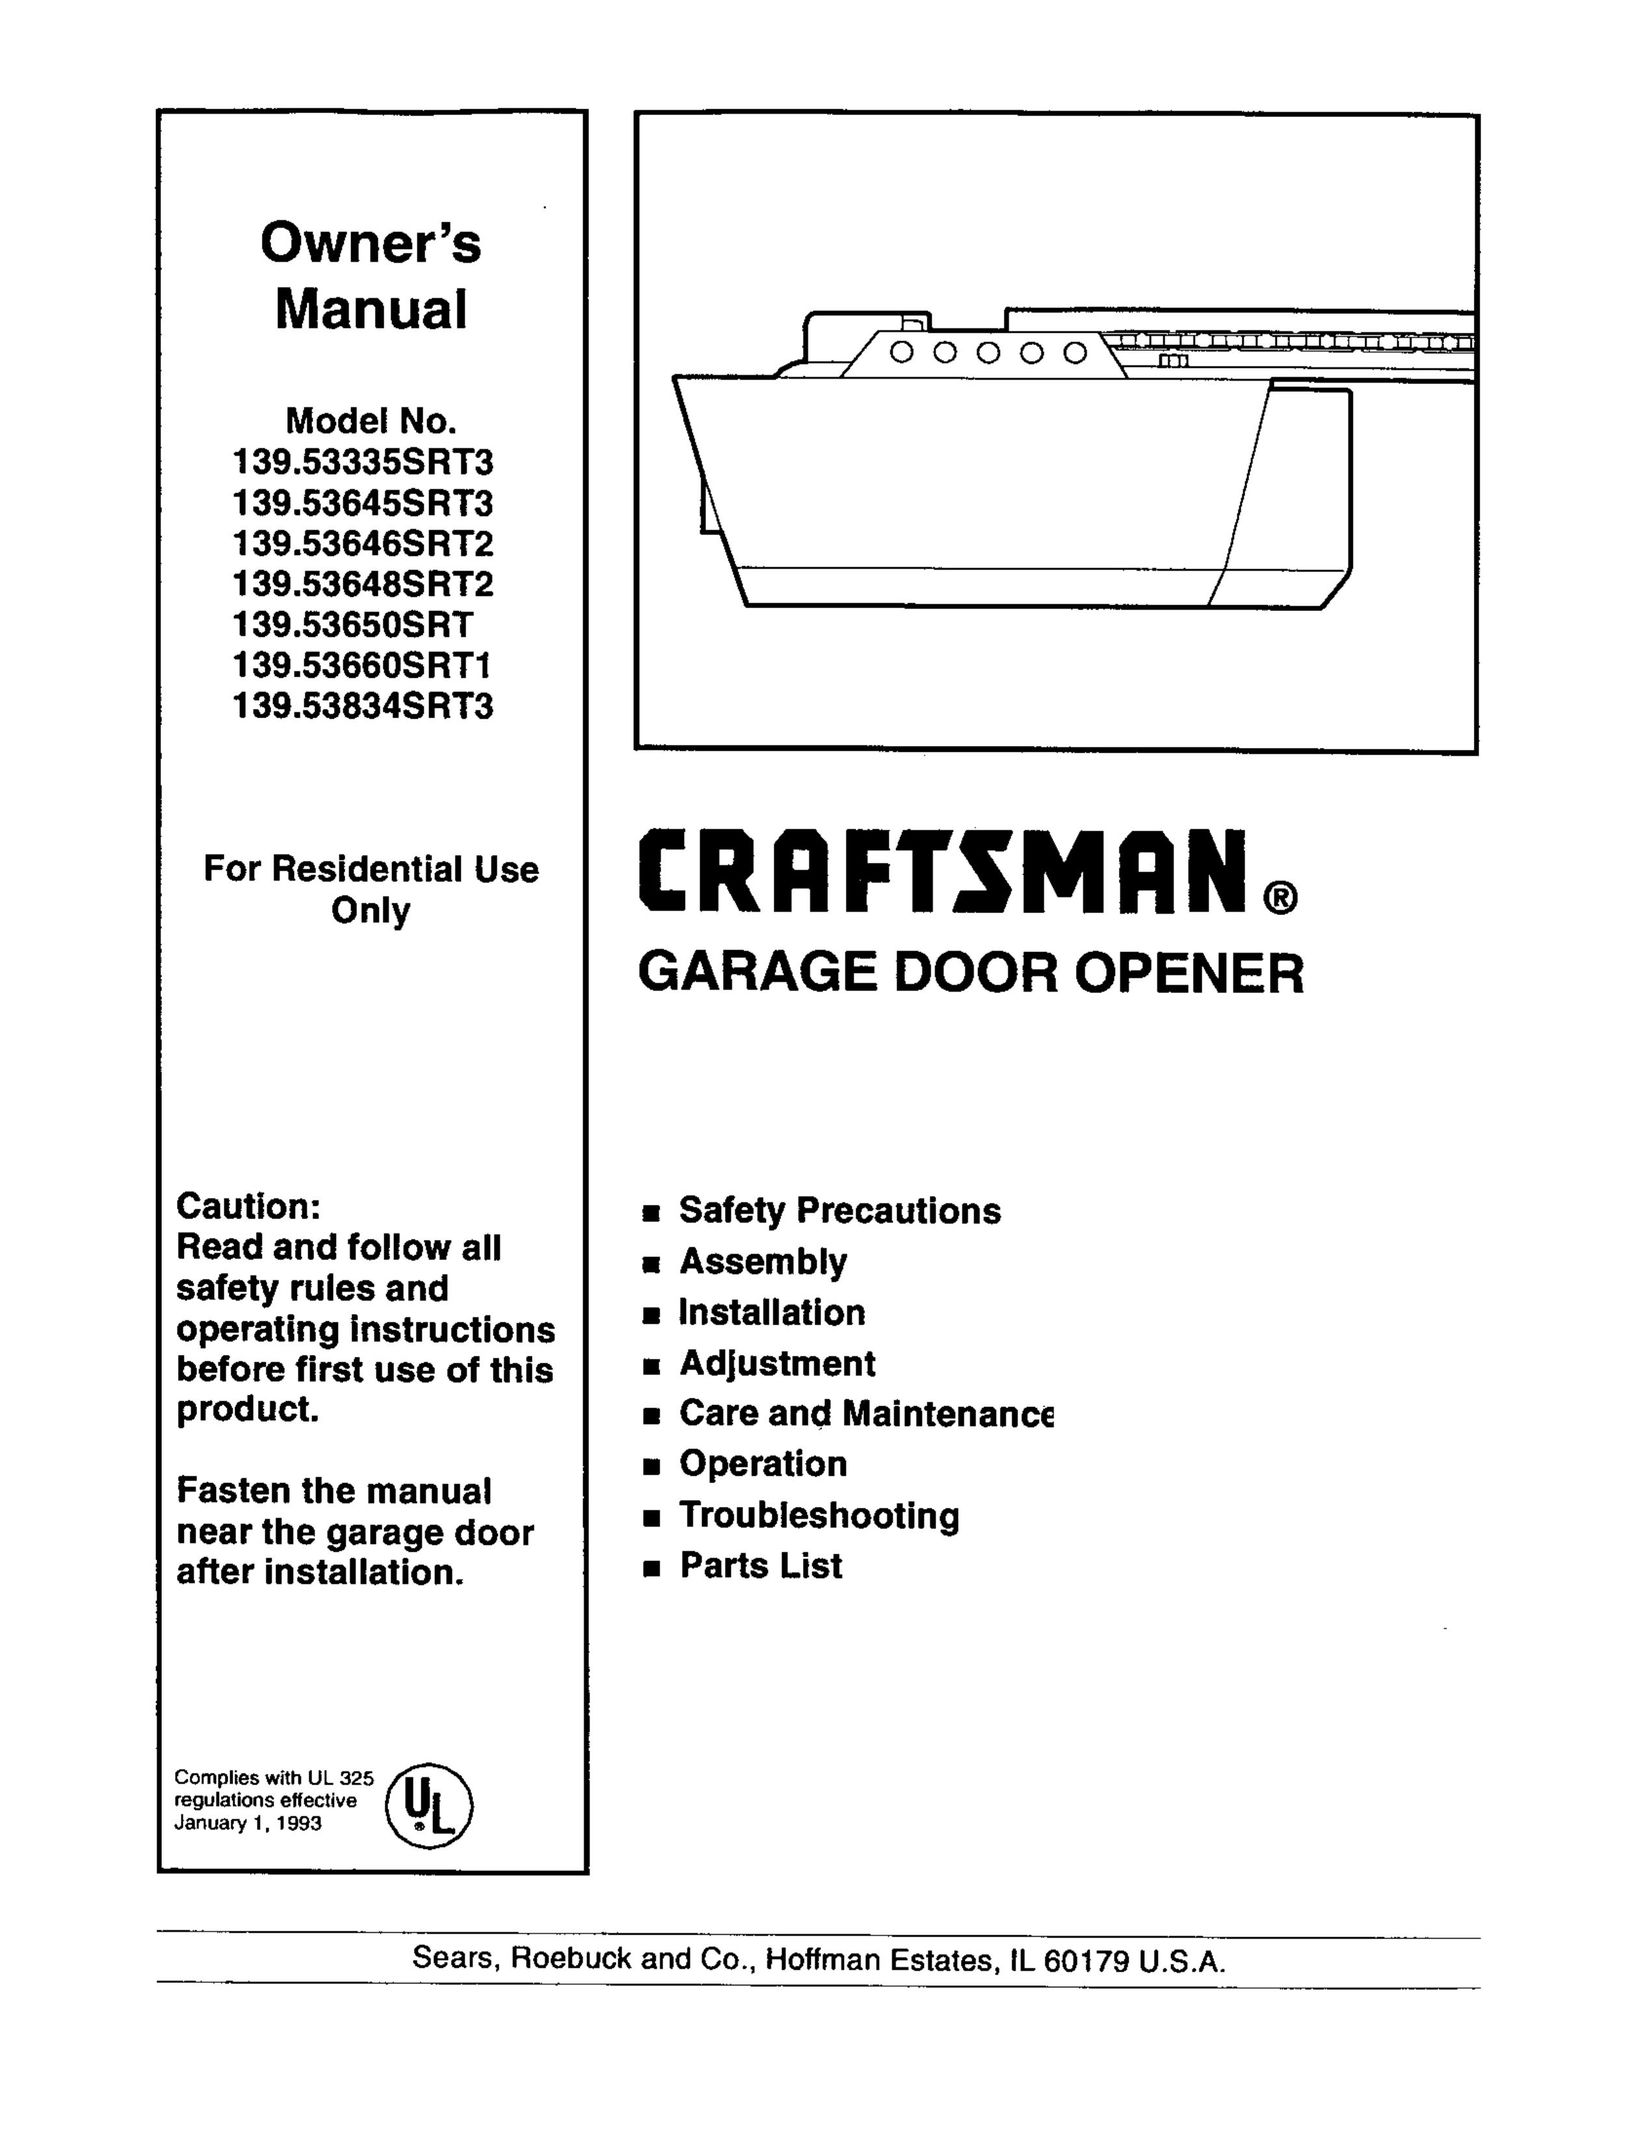 Craftsman 139.53834SRT3 Garage Door Opener User Manual